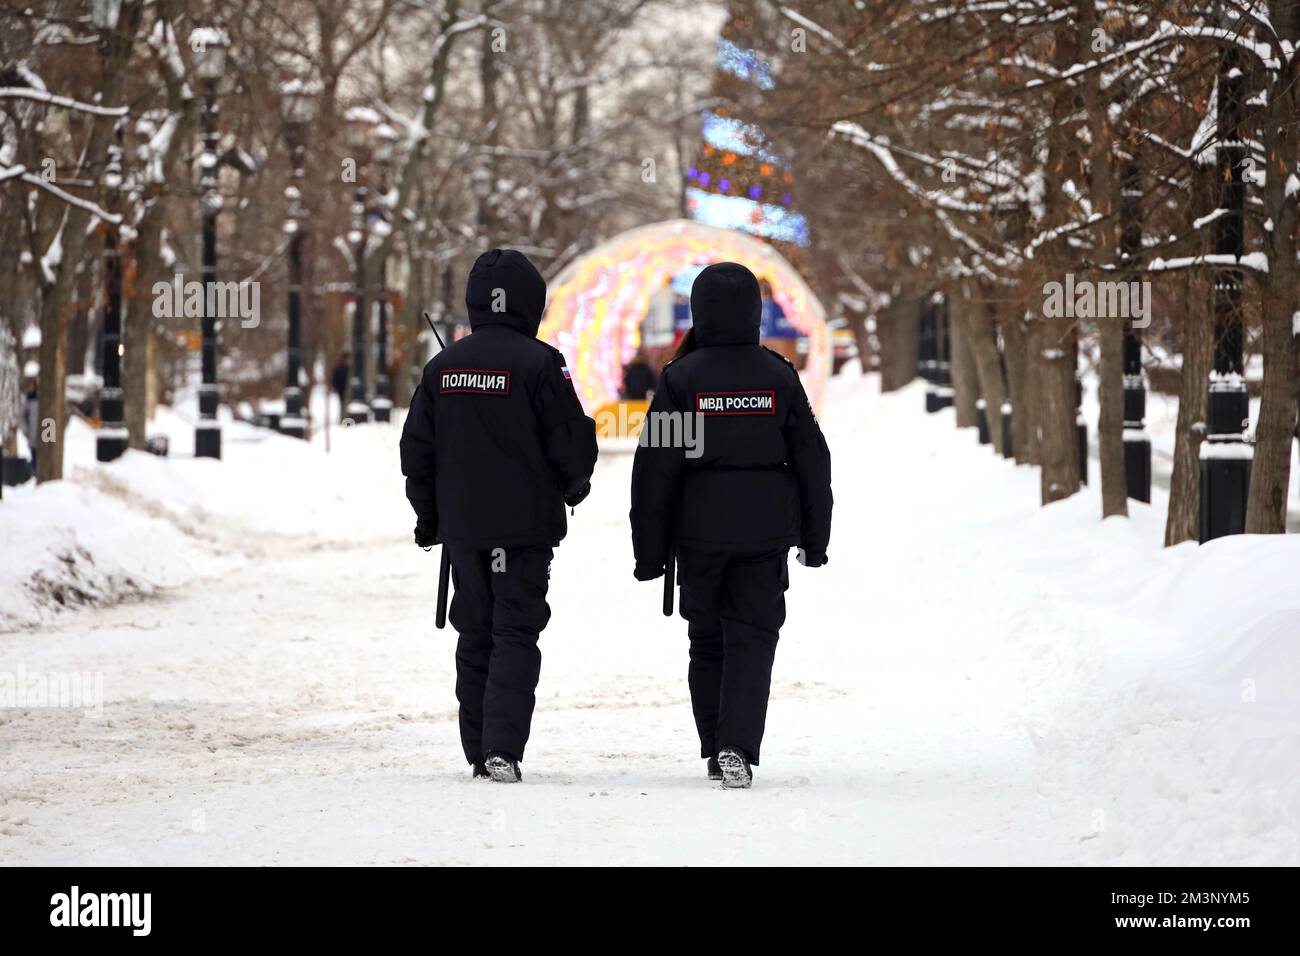 Des policiers russes patrouillent dans une rue de la ville de Moscou sur fond de décorations du nouvel an. Traduction des inscriptions sur le dos humain: 'Police' Banque D'Images